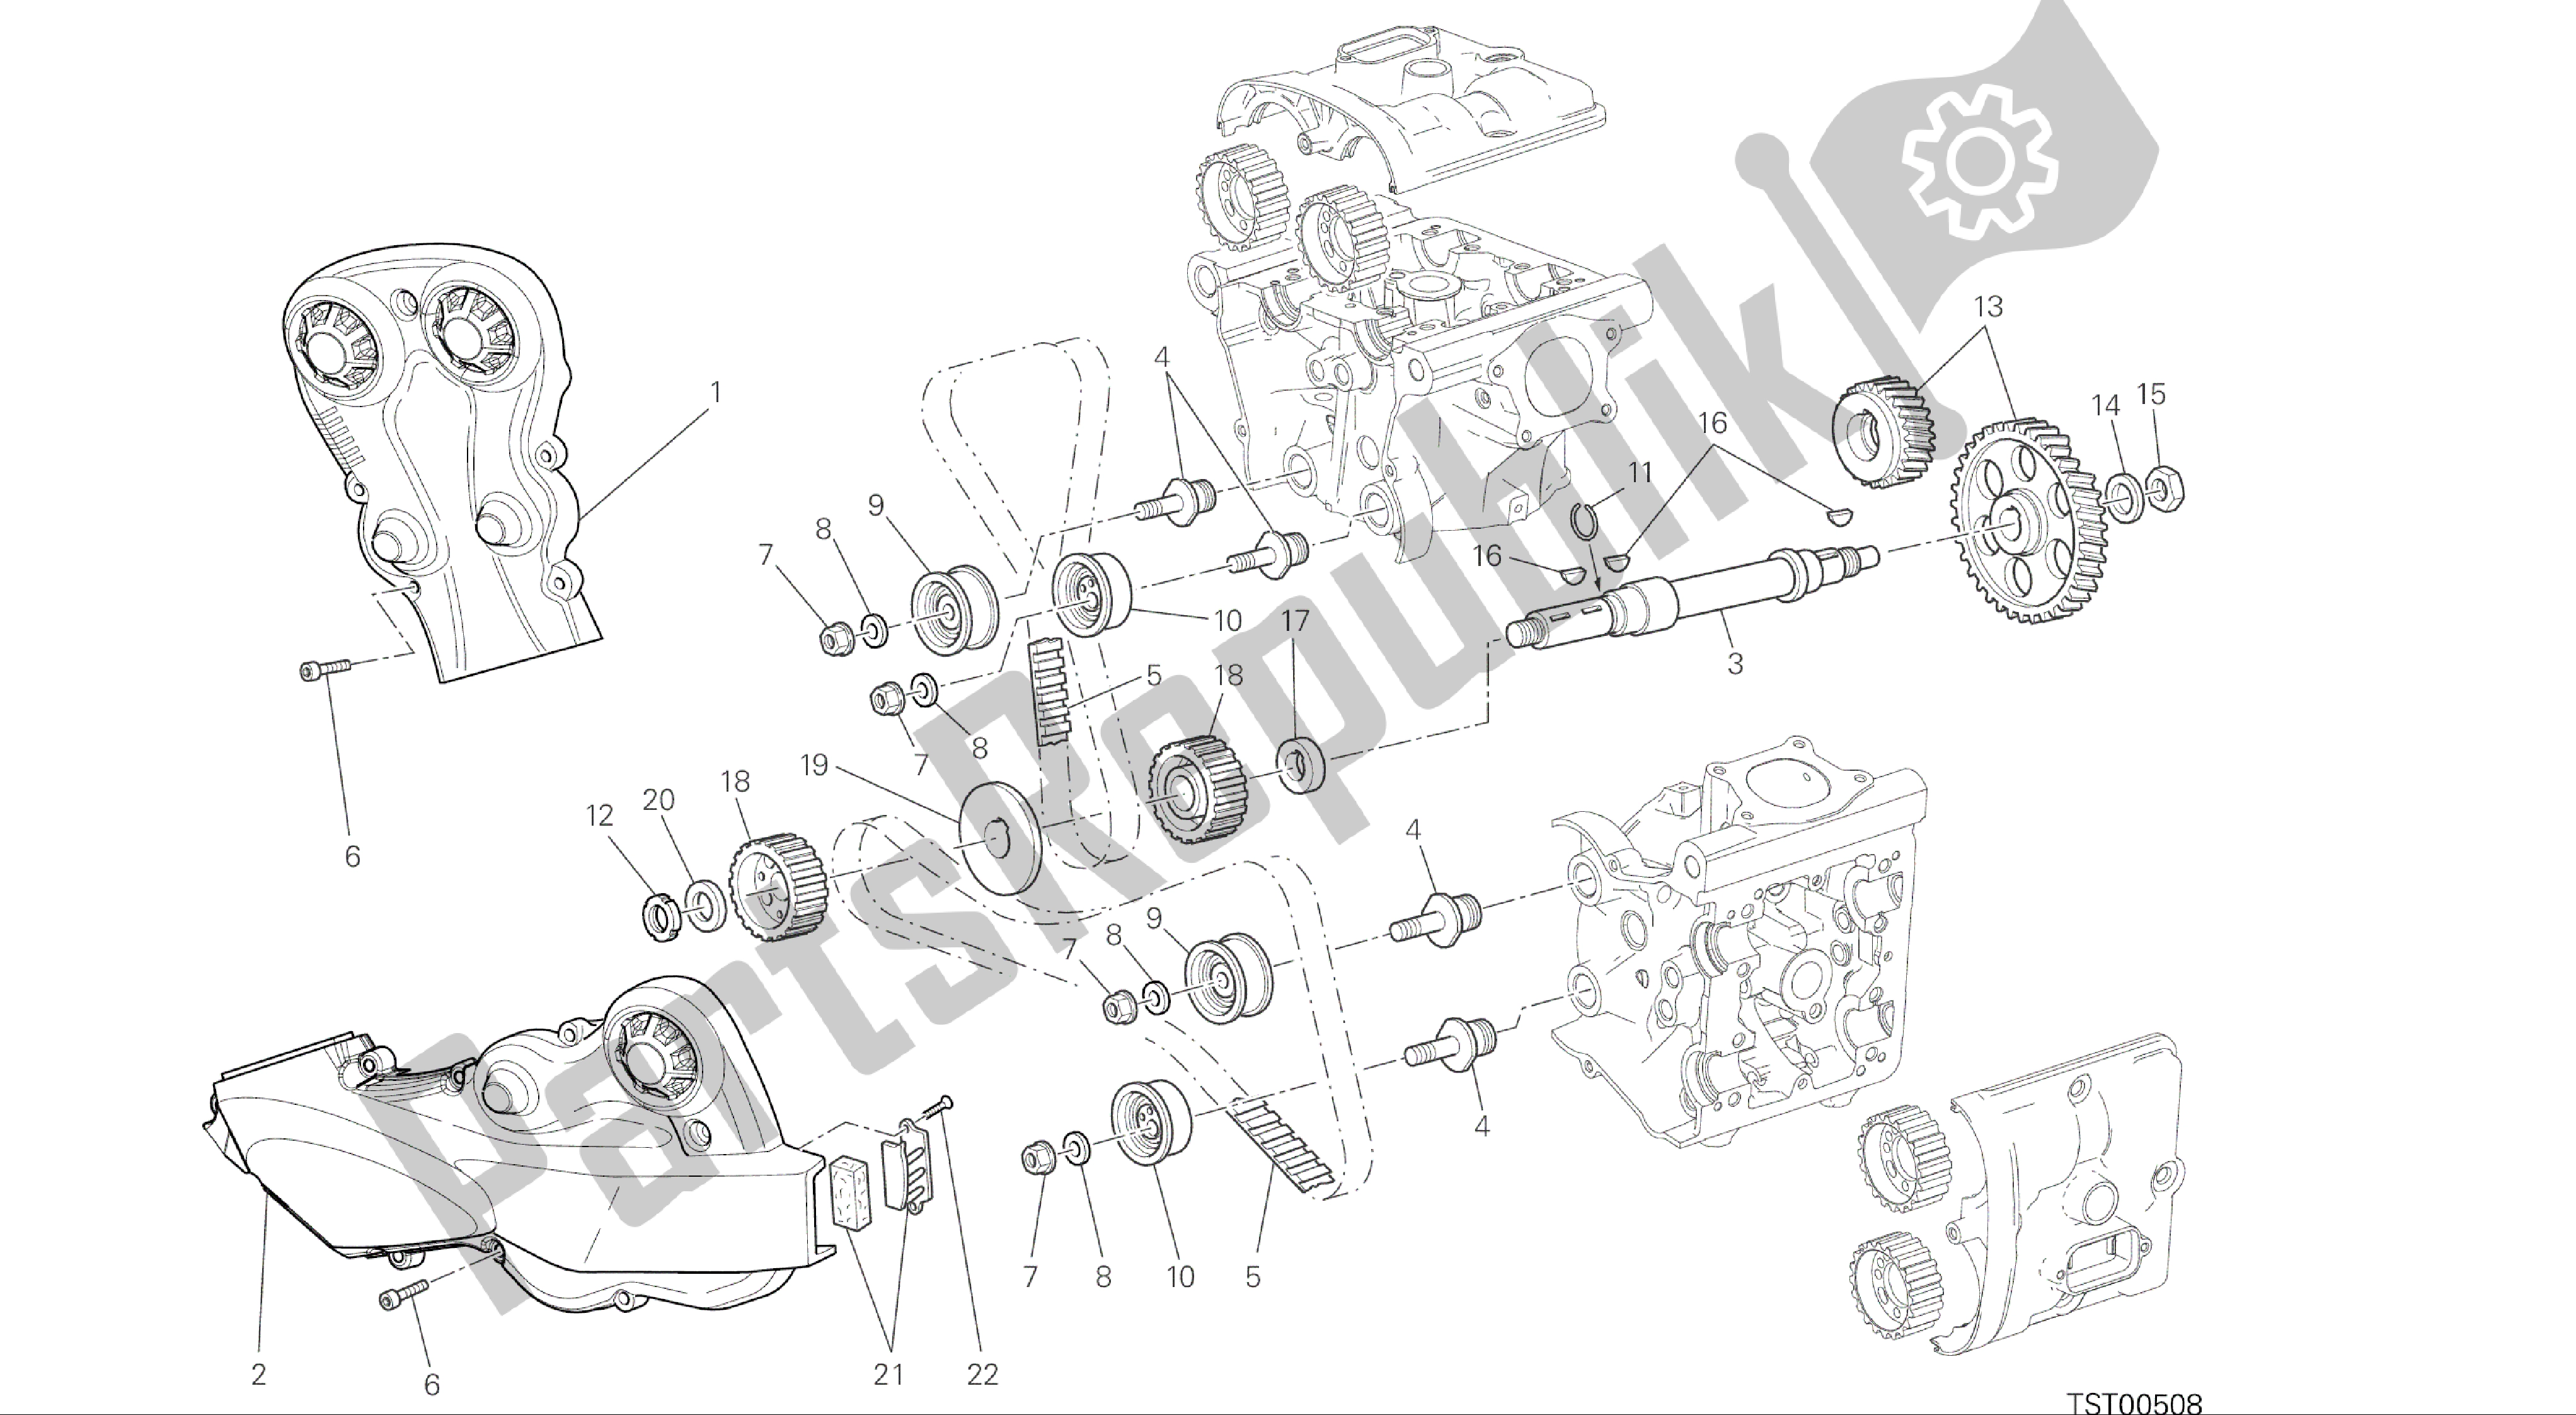 Toutes les pièces pour le Dessin 008 - Moteur Du Groupe Distribuzione [mod: M 1200] du Ducati Monster 1200 2015